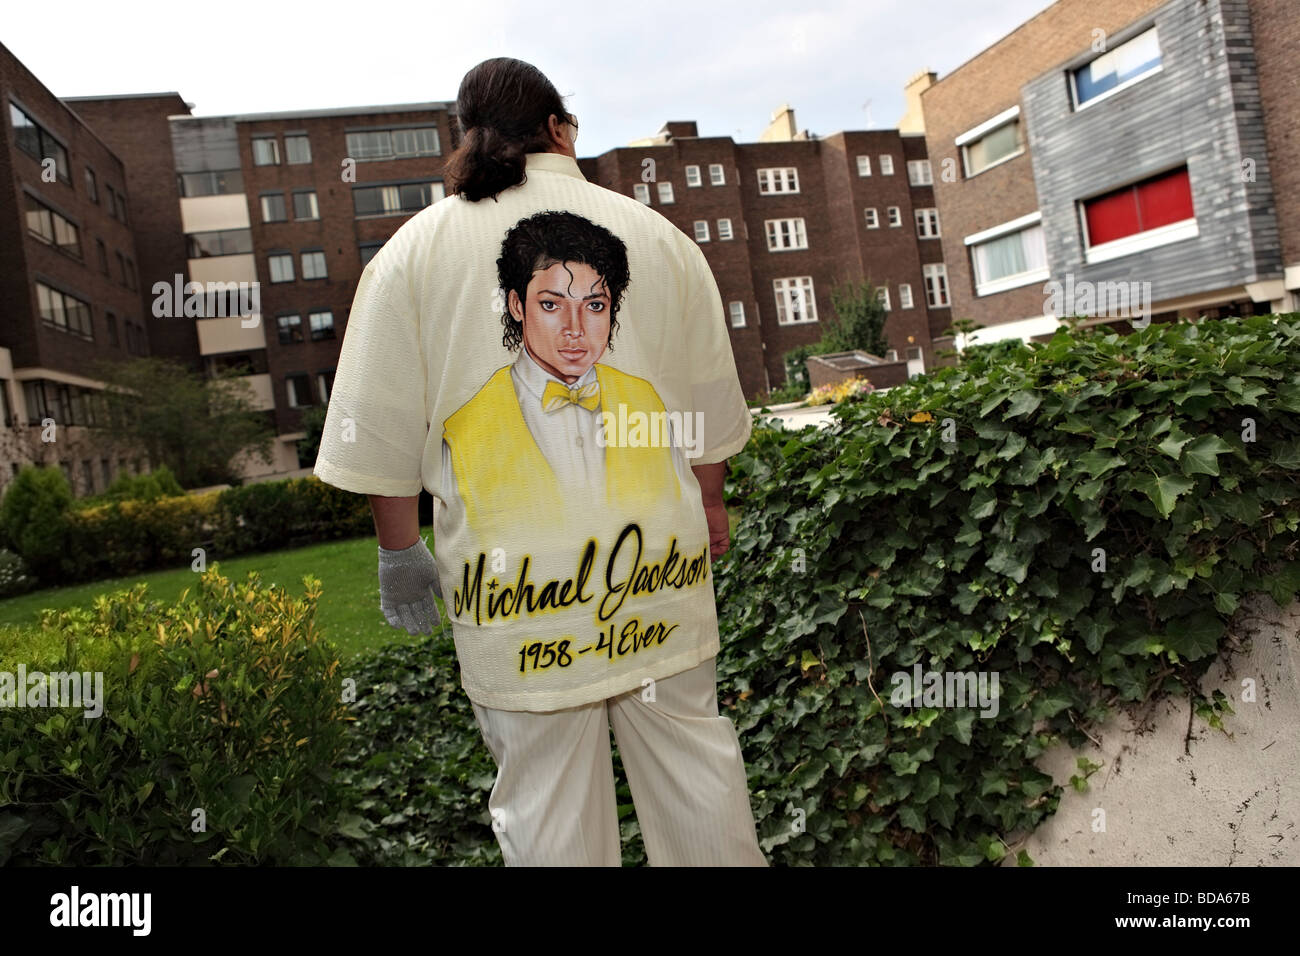 Michael Jackson's fan pose avec chemise sur mesure à l'intérieur d'une cour britannique. Banque D'Images